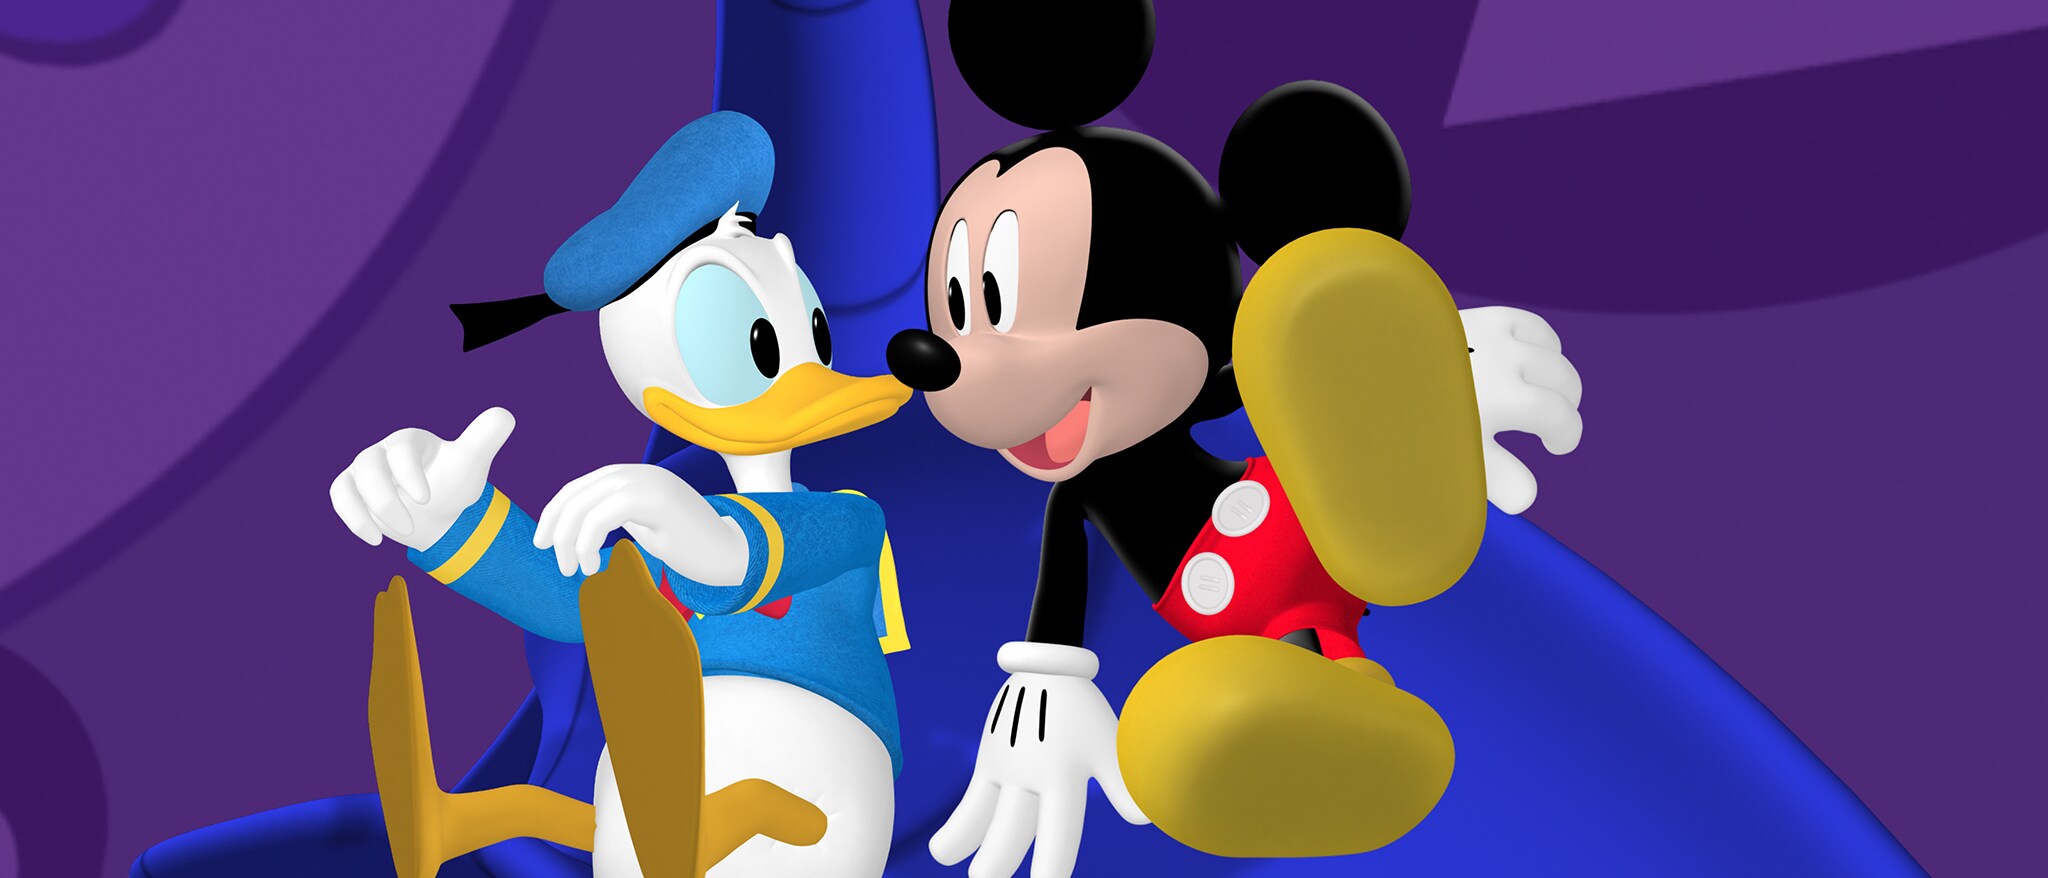 Mickey's Adventures In Wonderland part 2 Catch The cuckoo bird